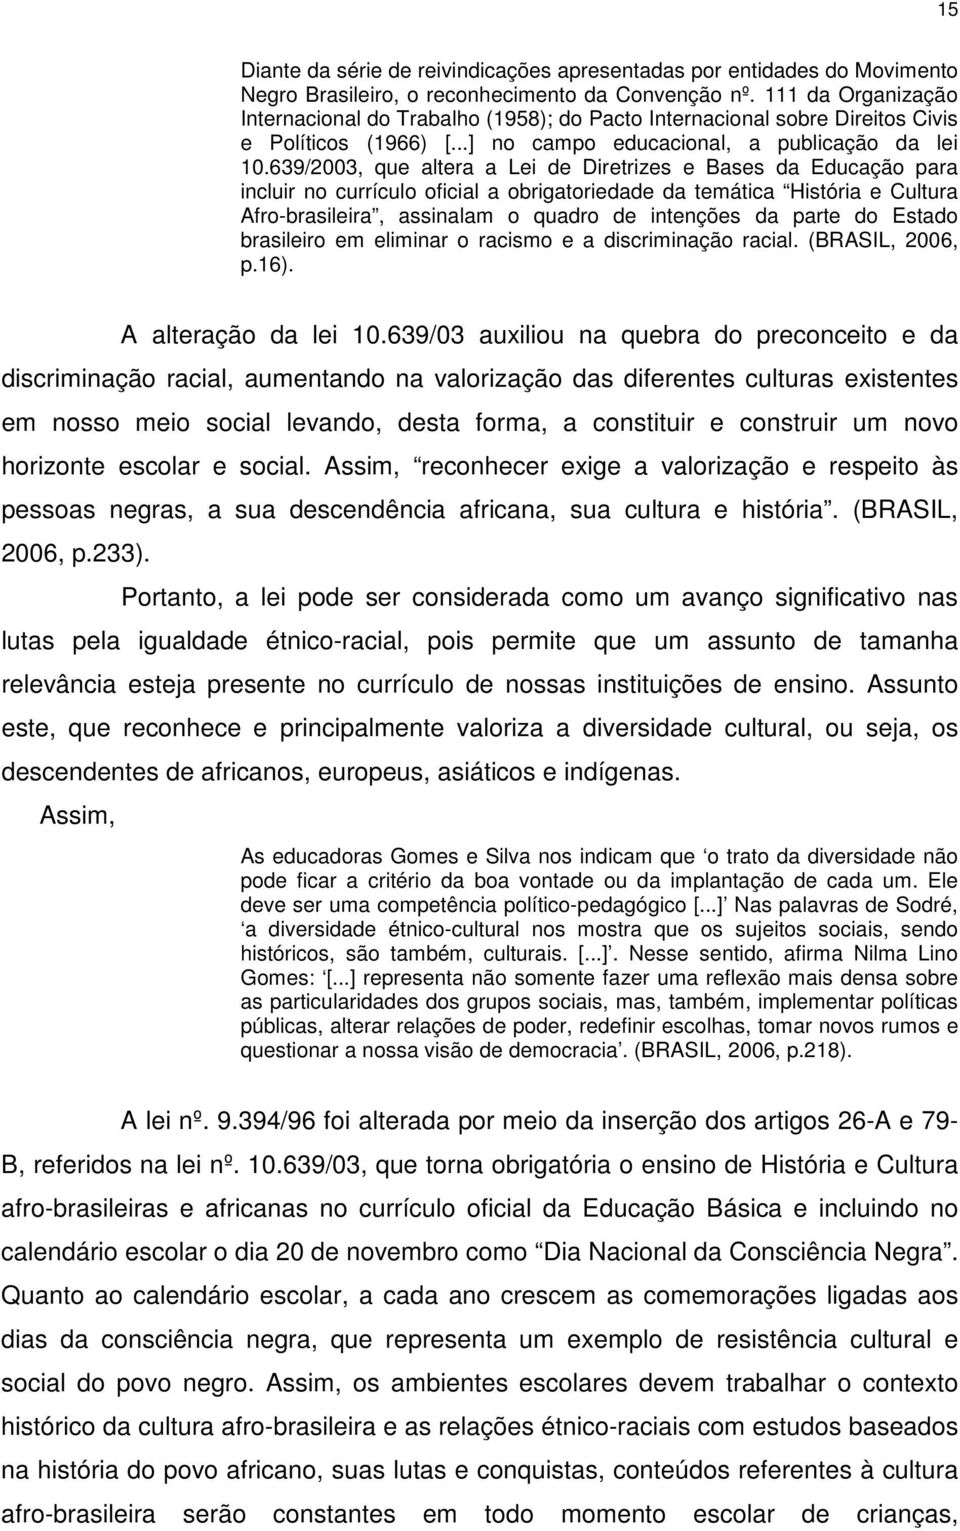 639/2003, que altera a Lei de Diretrizes e Bases da Educação para incluir no currículo oficial a obrigatoriedade da temática História e Cultura Afro-brasileira, assinalam o quadro de intenções da